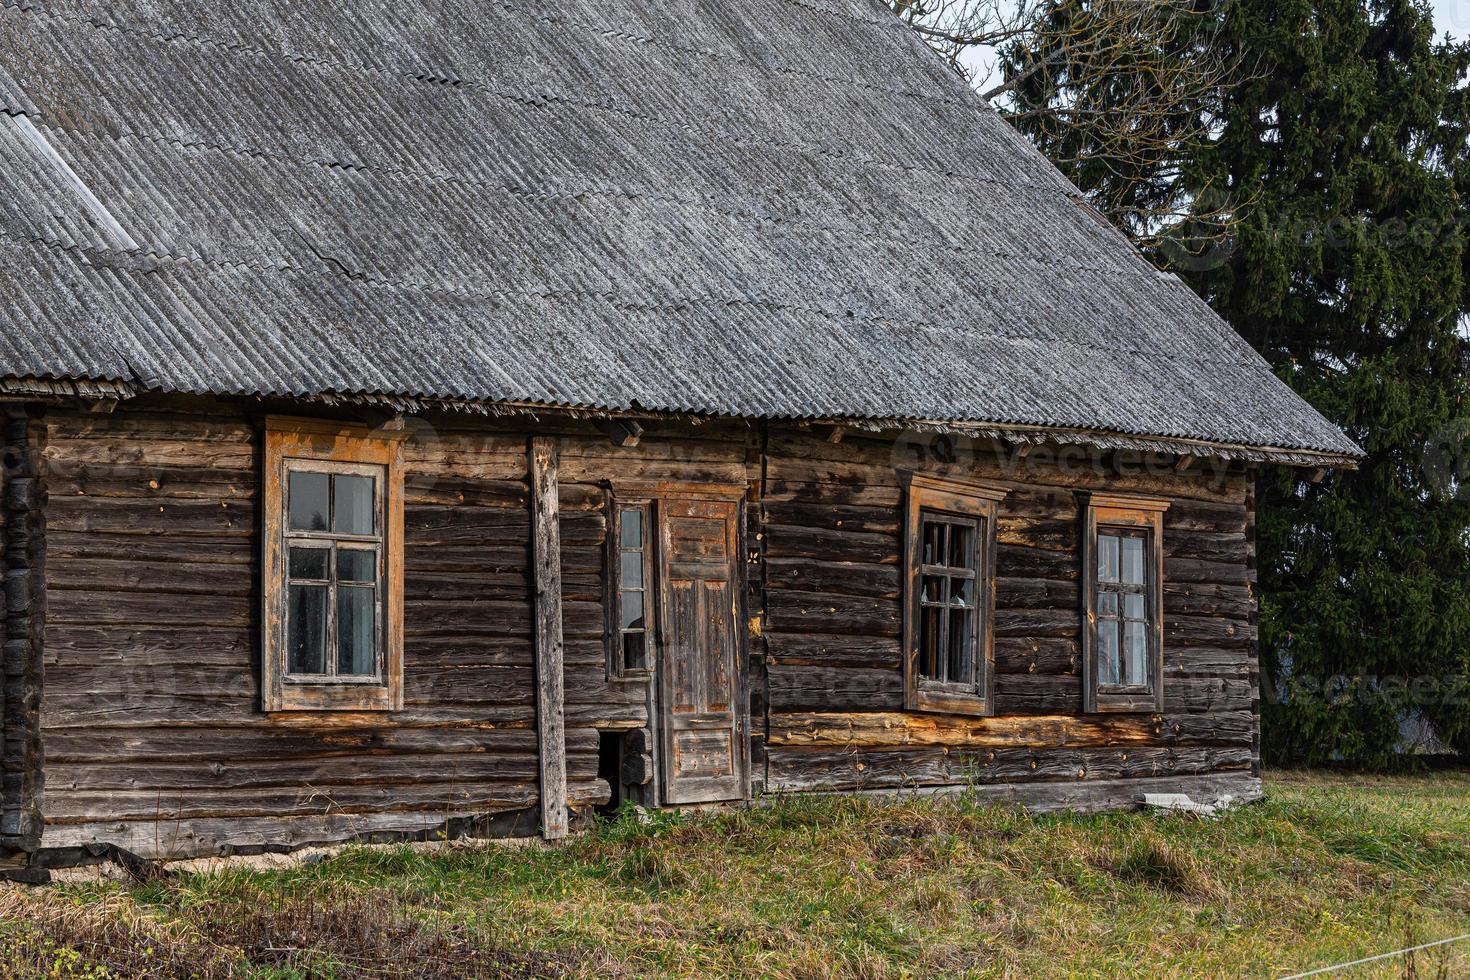 antiguas casas tradicionales en letonia foto